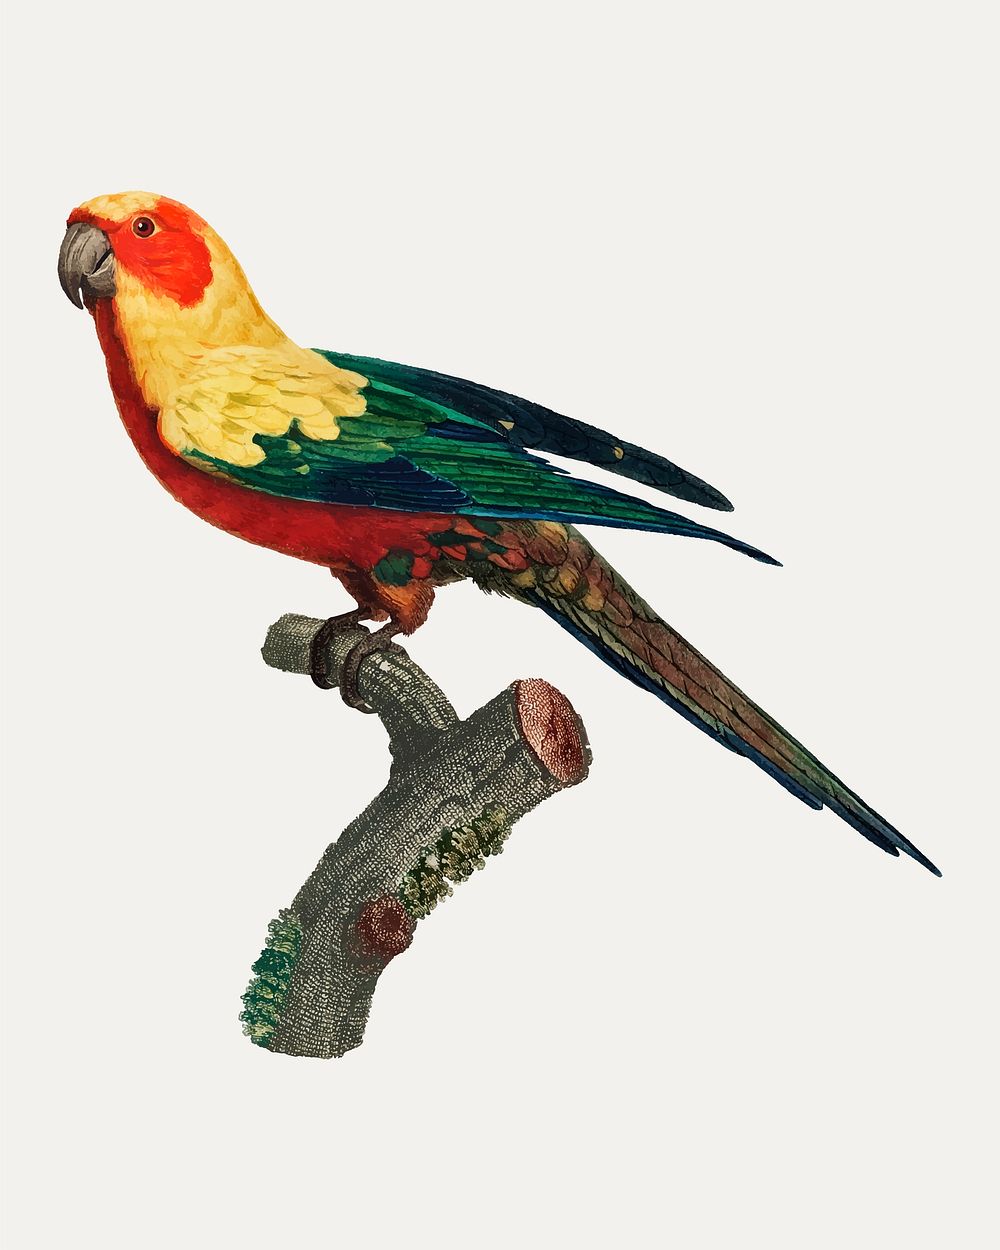 The Sun Parakeet (Aratinga solstitialis), female vintage illustration